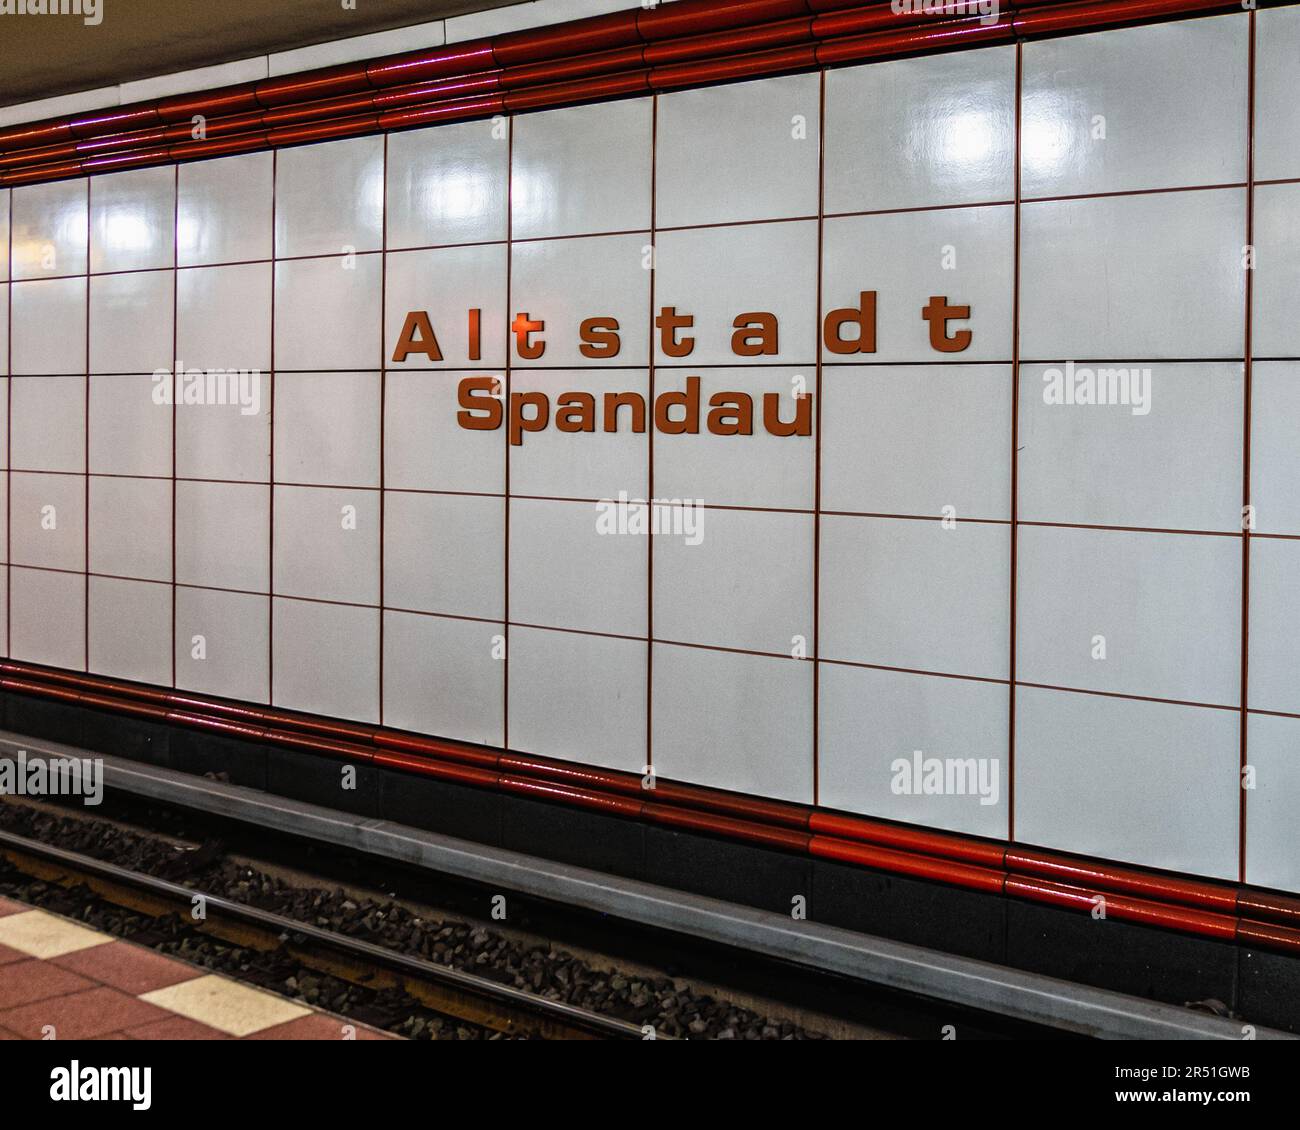 U Altstadt Spandau la stazione della metropolitana U-Bahn serve la linea U7 di Alt-Spandau, Berlino, Germania. Stazione decorativa Foto Stock